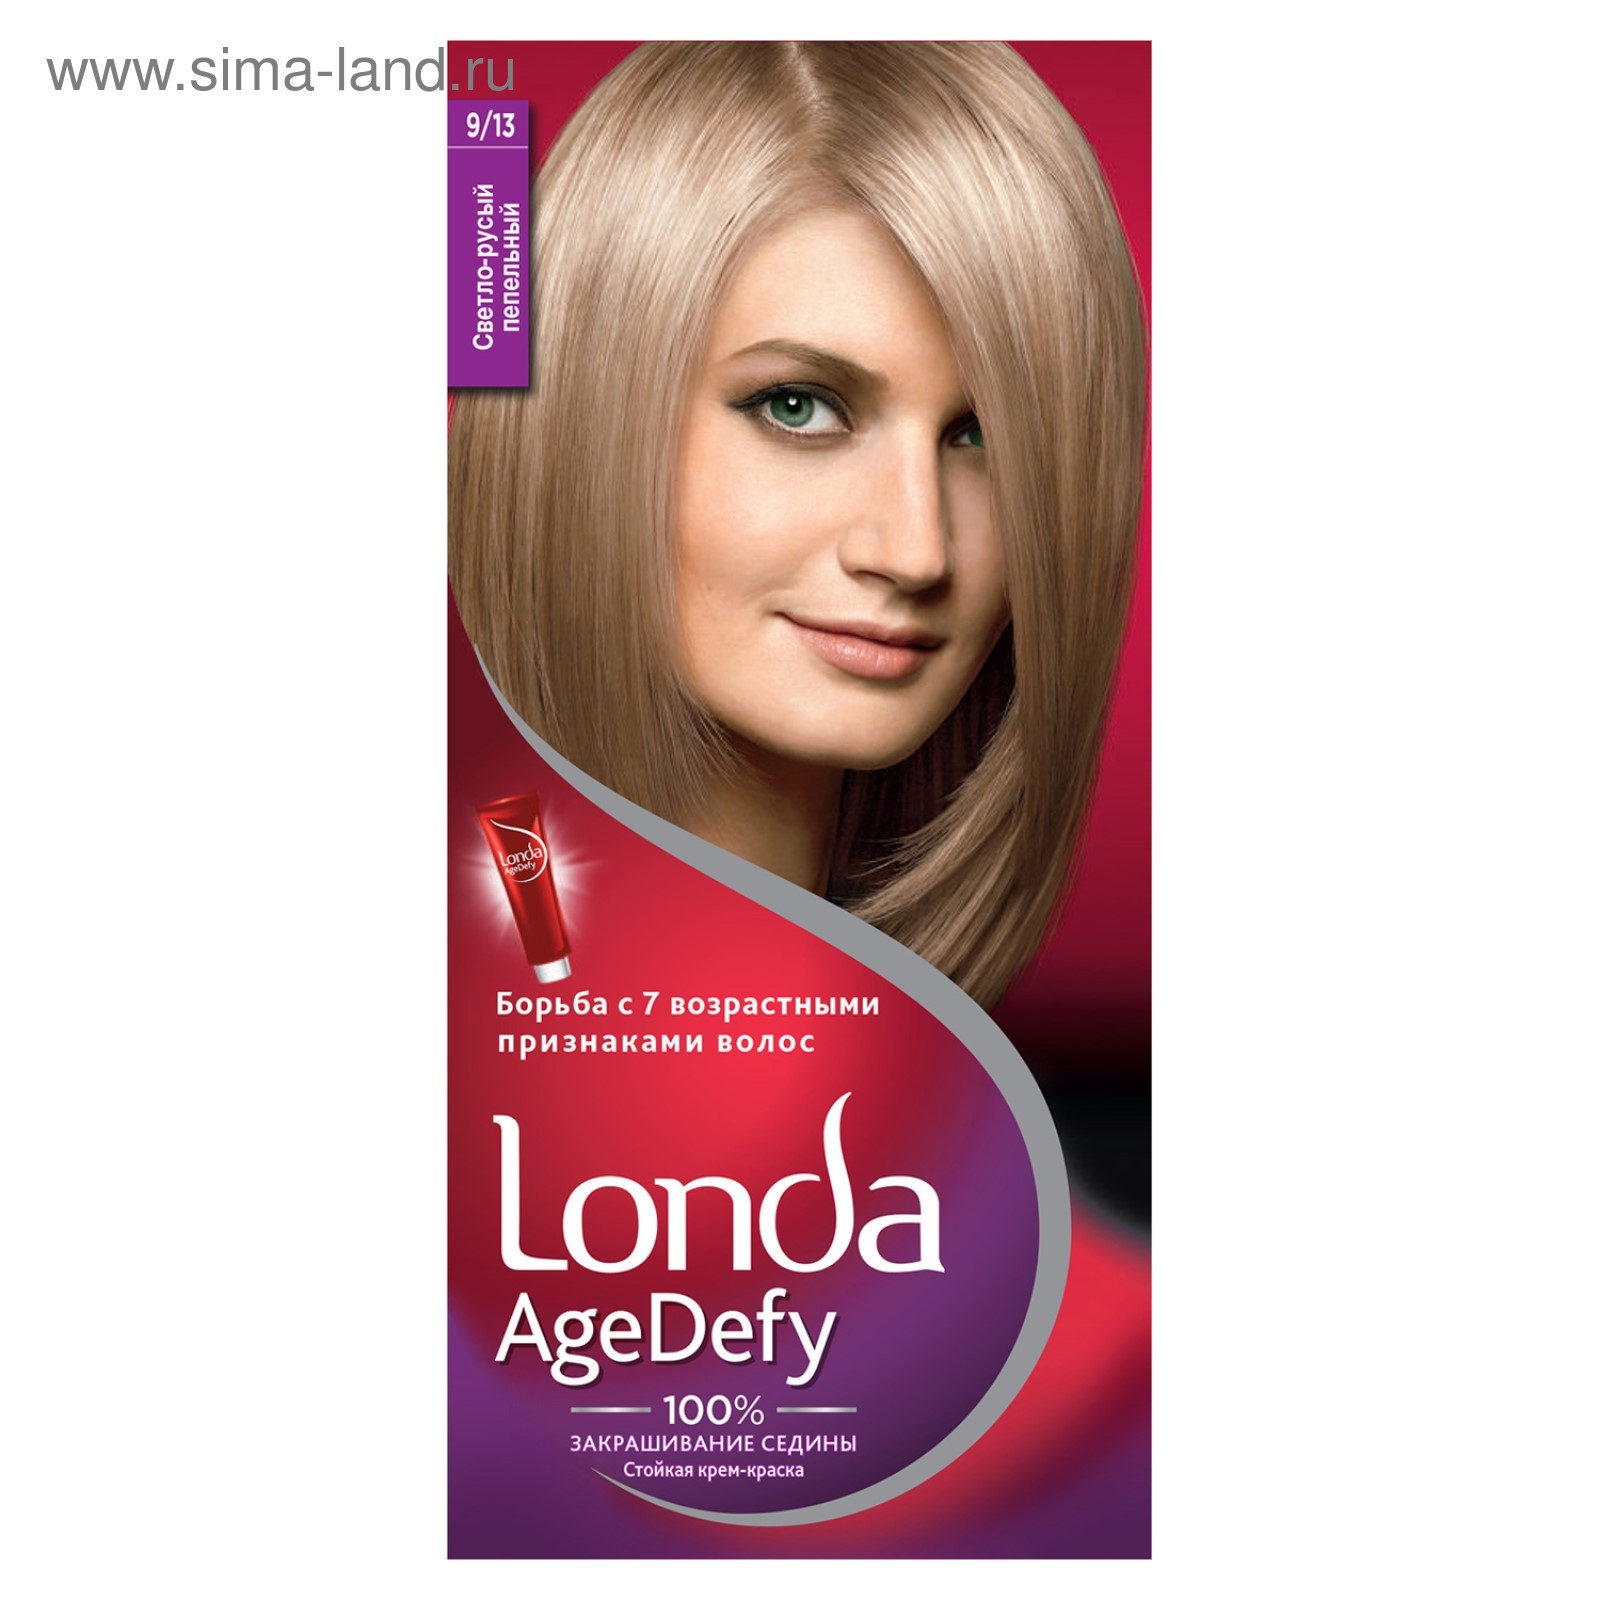 Крем-краска для волос LONDA (Лонда) тон 16 Средне-русый